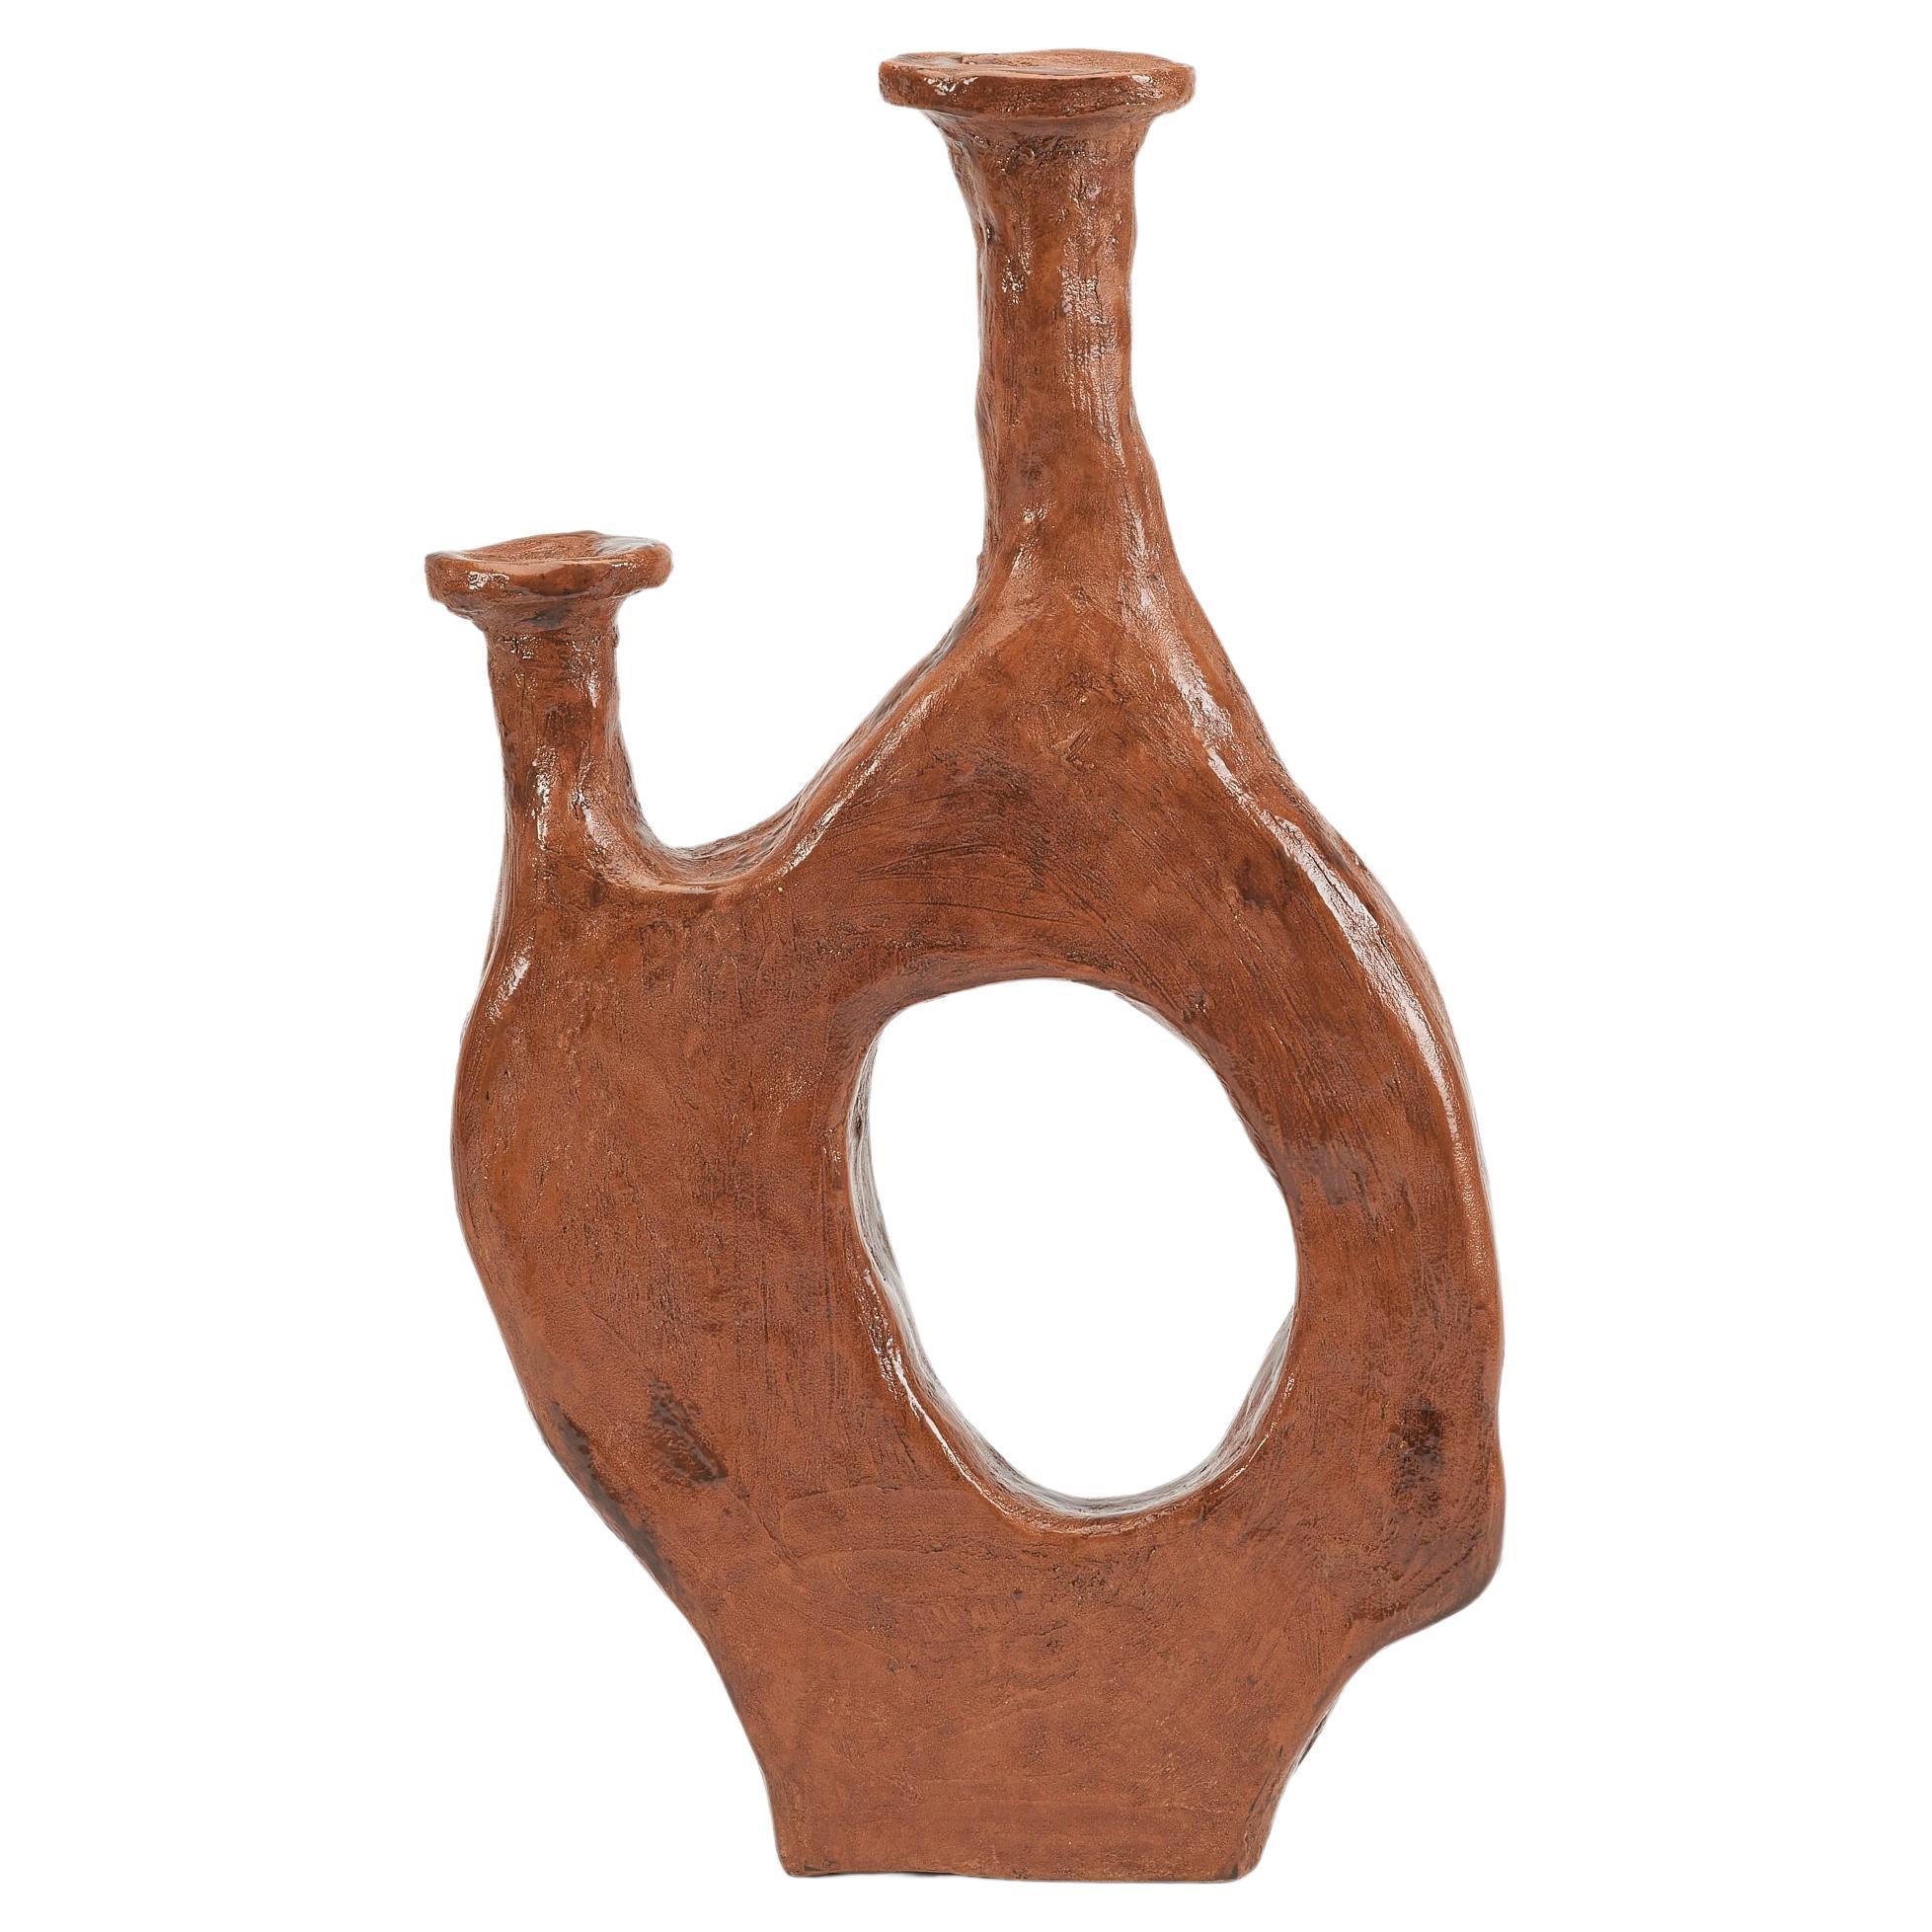 Uble Medium Vase by Willem Van Hooff